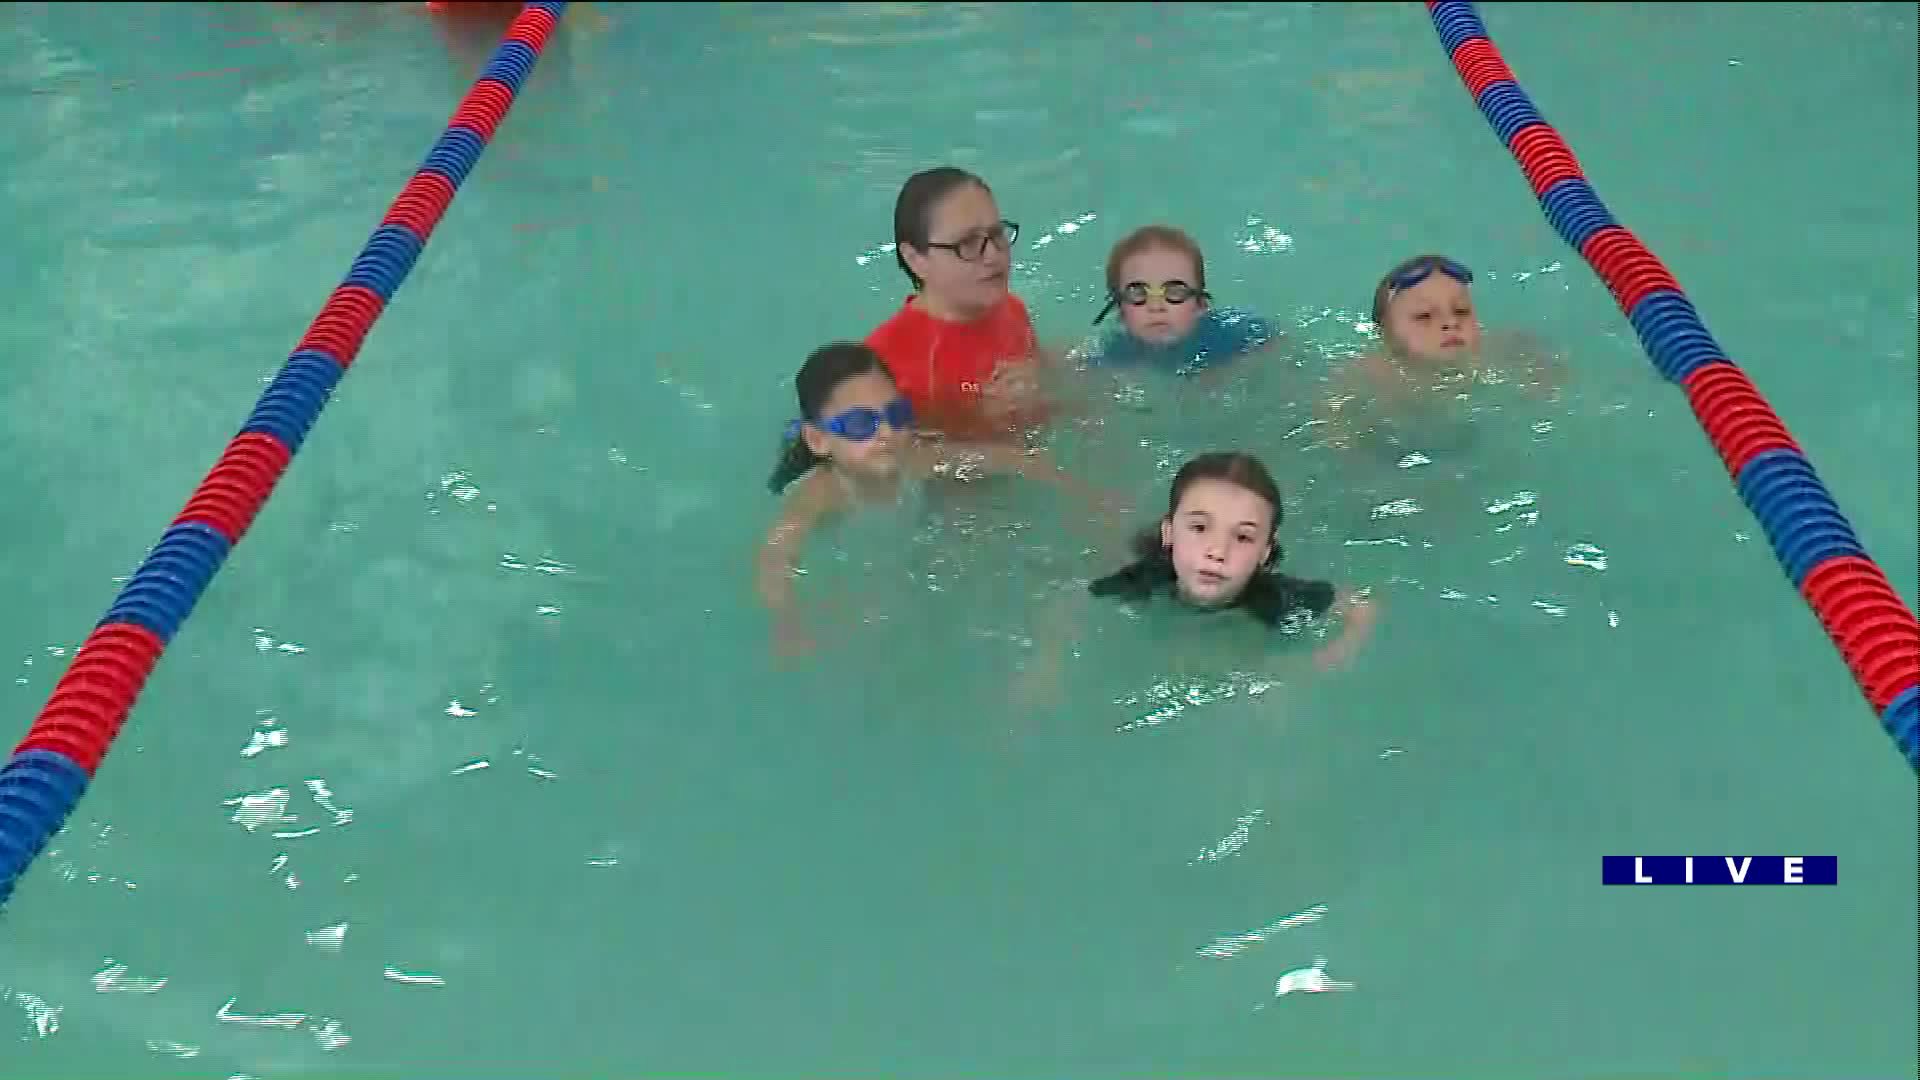 Around Town talks about summer safety at Goldfish Swim School